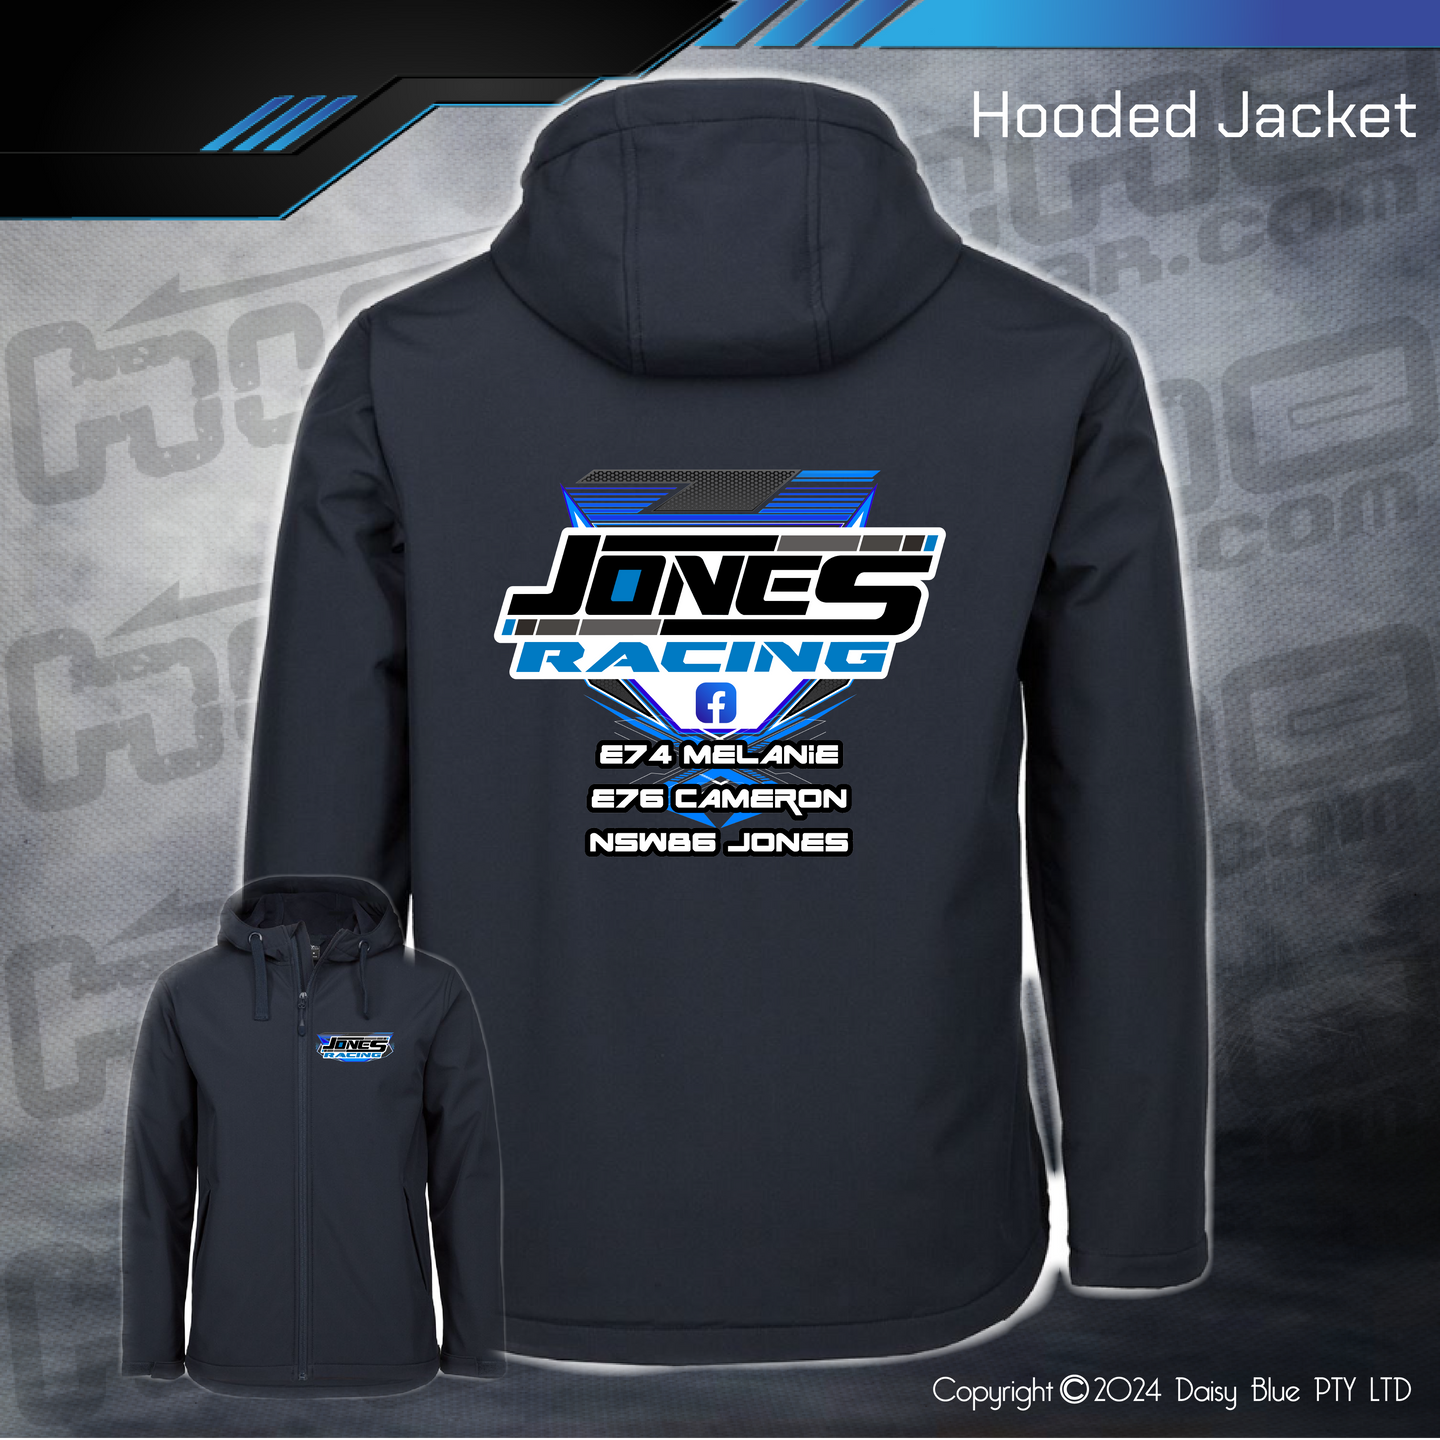 Hooded Jacket - Jones Racing